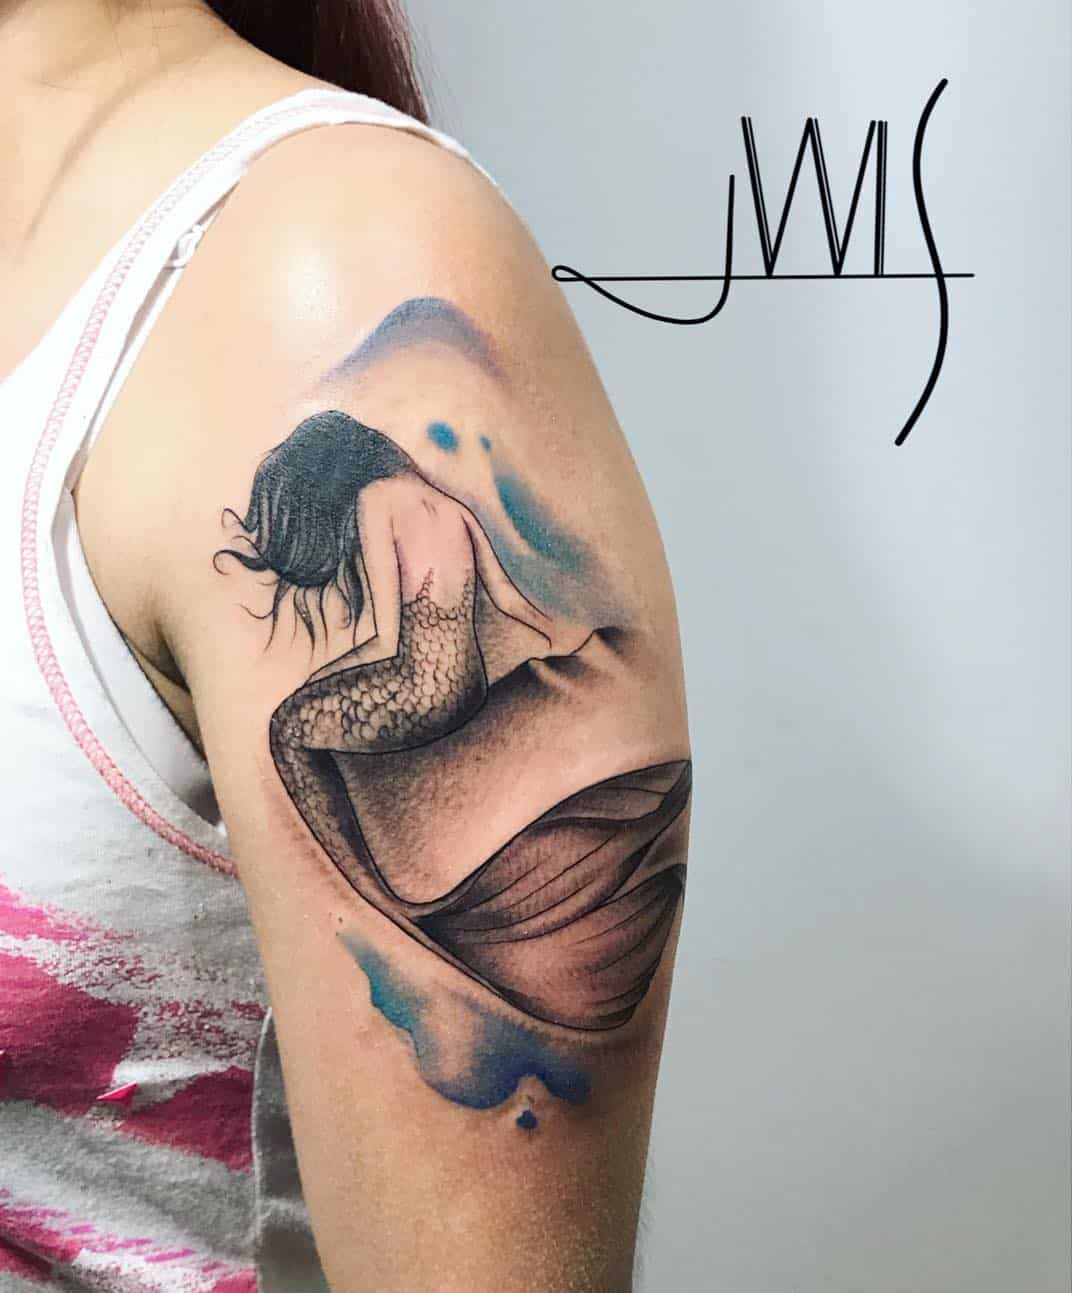 sirena tattoo by @j_wistattoo